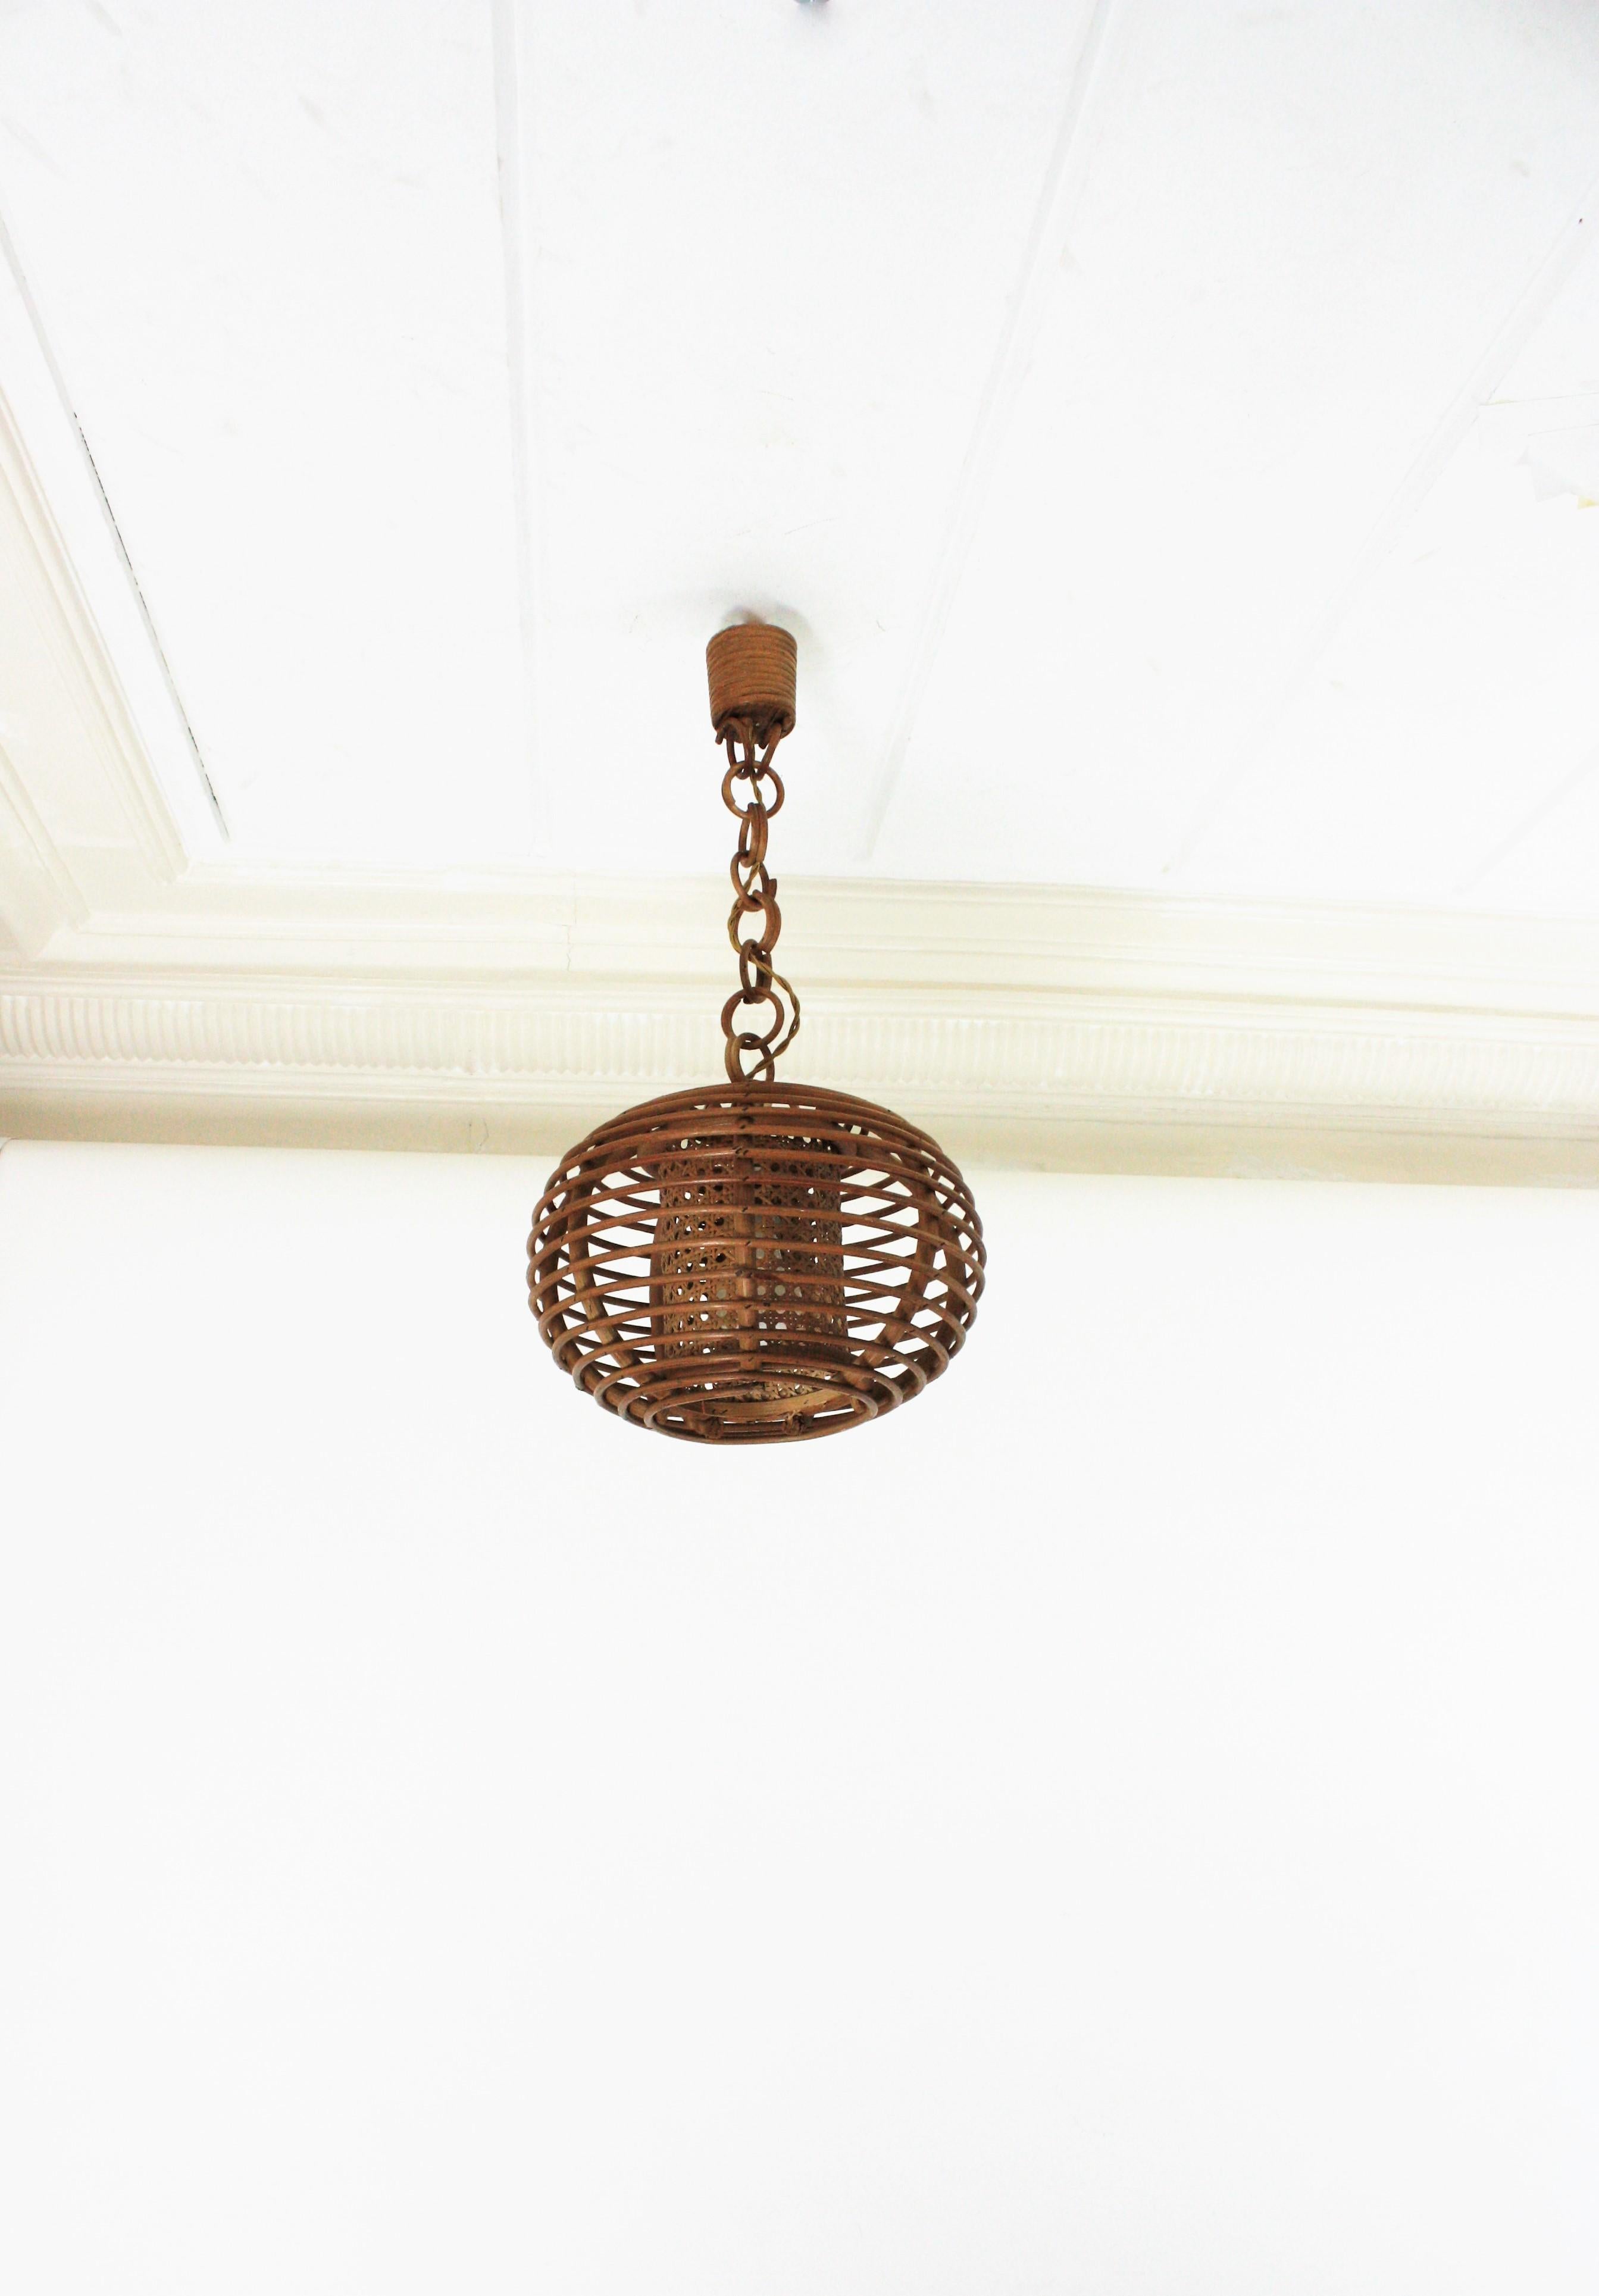 Lanterne en rotin avec abat-jour en forme de globe ou de boule, Espagne, années 1950-1960.
Cette lampe à suspension est entièrement fabriquée à la main avec du rotin, du bambou et de l'osier. L'abat-jour en forme de boule est suspendu à une chaîne